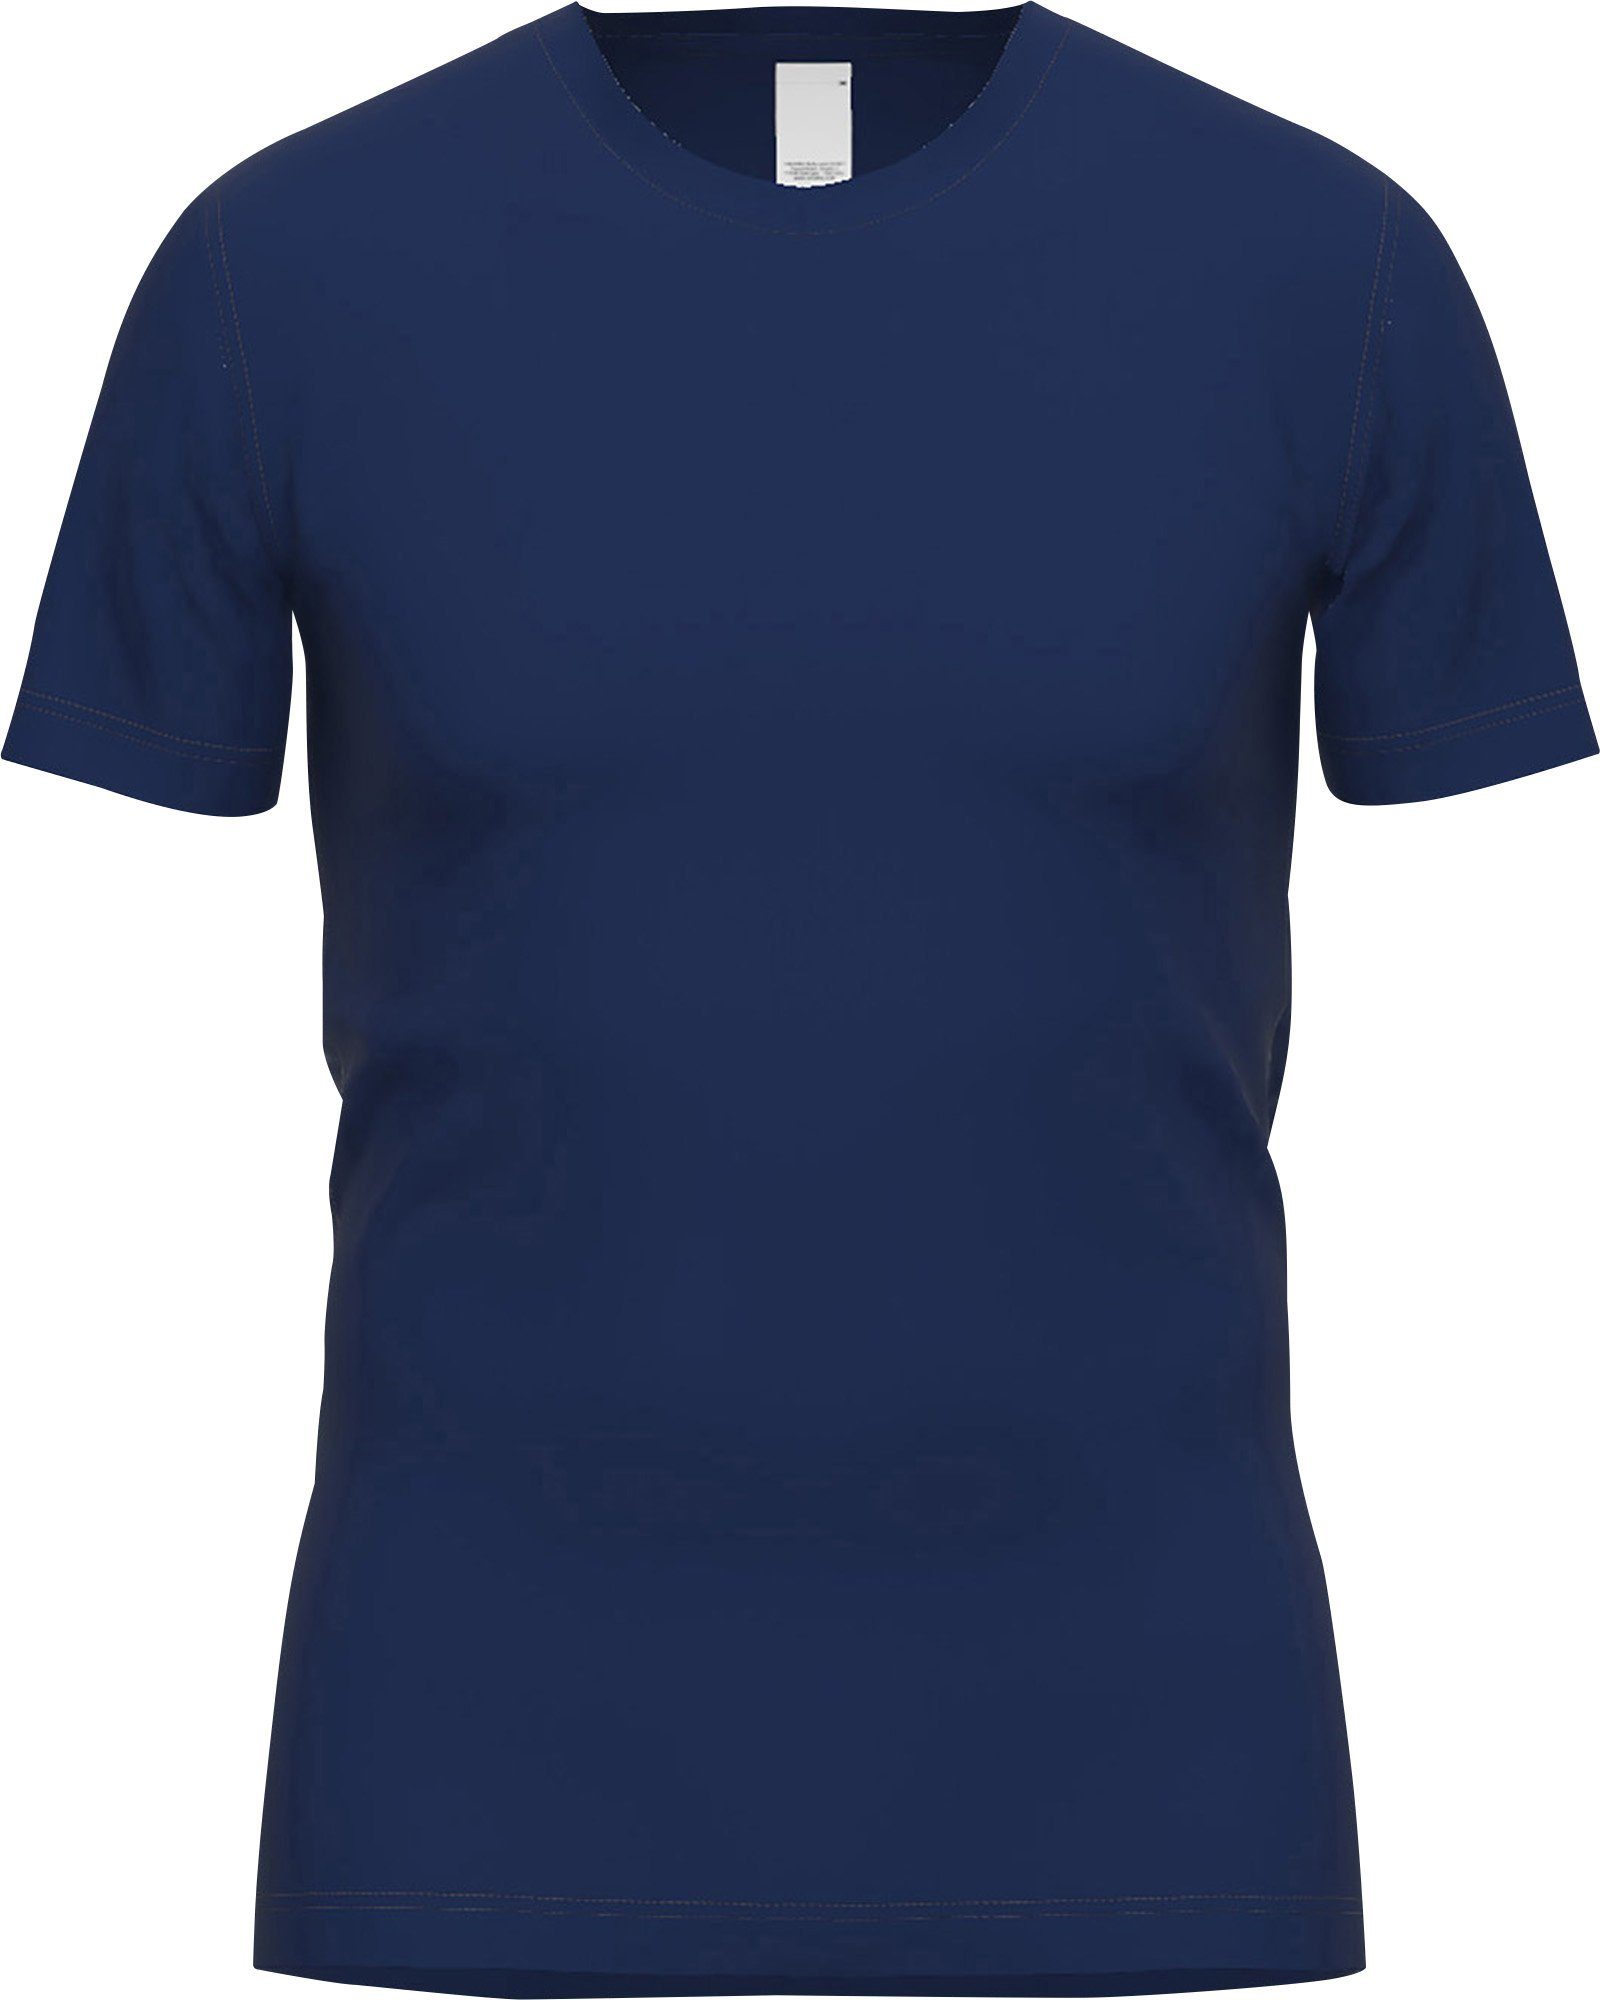 1/2-Arm blau-dunkel Herren-Thermo-Unterhemd, Interlock-Jersey GÖTZBURG Uni Unterhemd